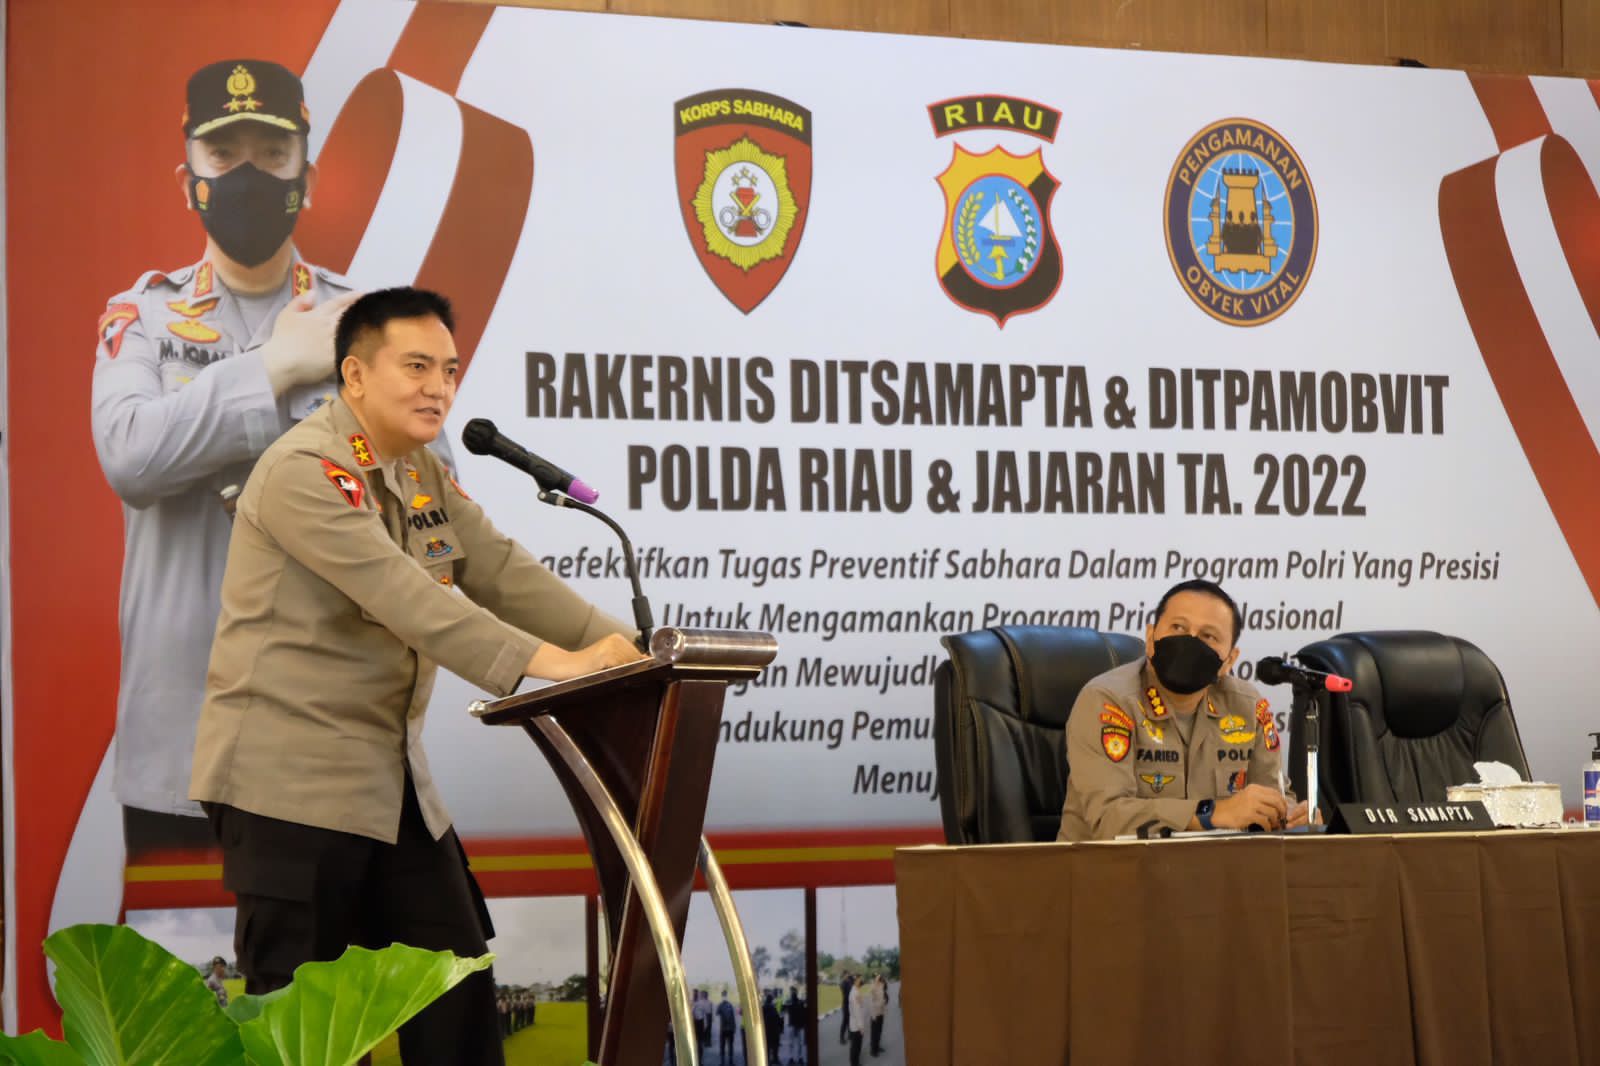 Buka Rakernis, Kapolda Riau Irjen Iqbal Ingatkan Anggota Sabhara dan Obvit Bersikap Humanis Sehingga Dicintai Masyarakat